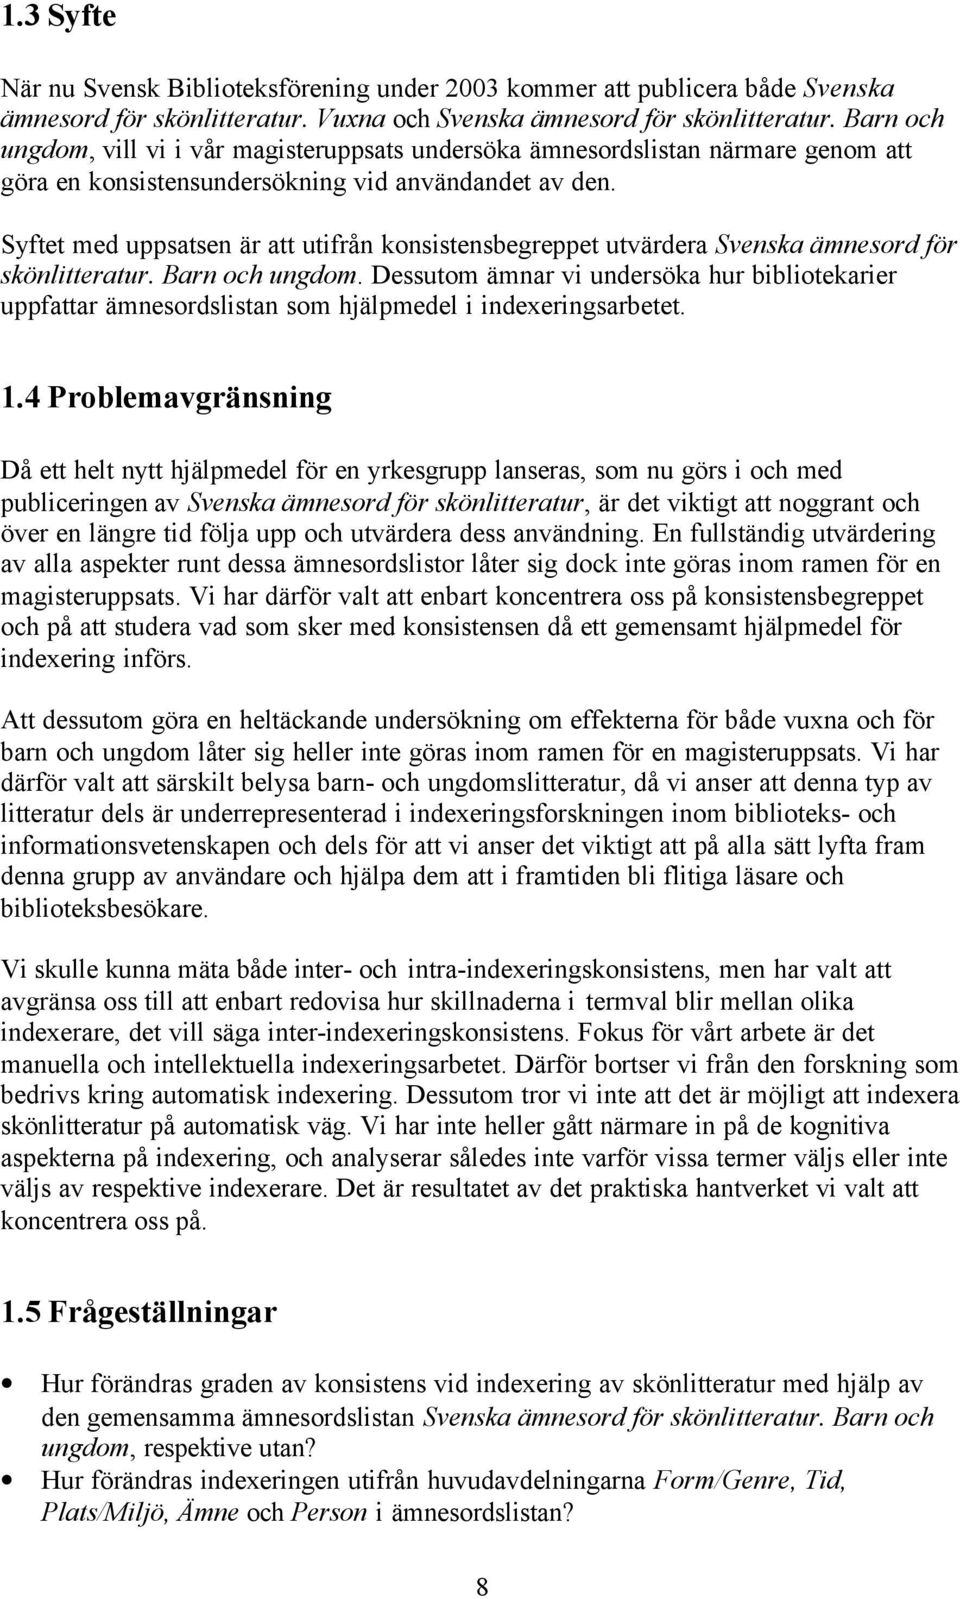 Syftet med uppsatsen är att utifrån konsistensbegreppet utvärdera Svenska ämnesord för skönlitteratur. Barn och ungdom.